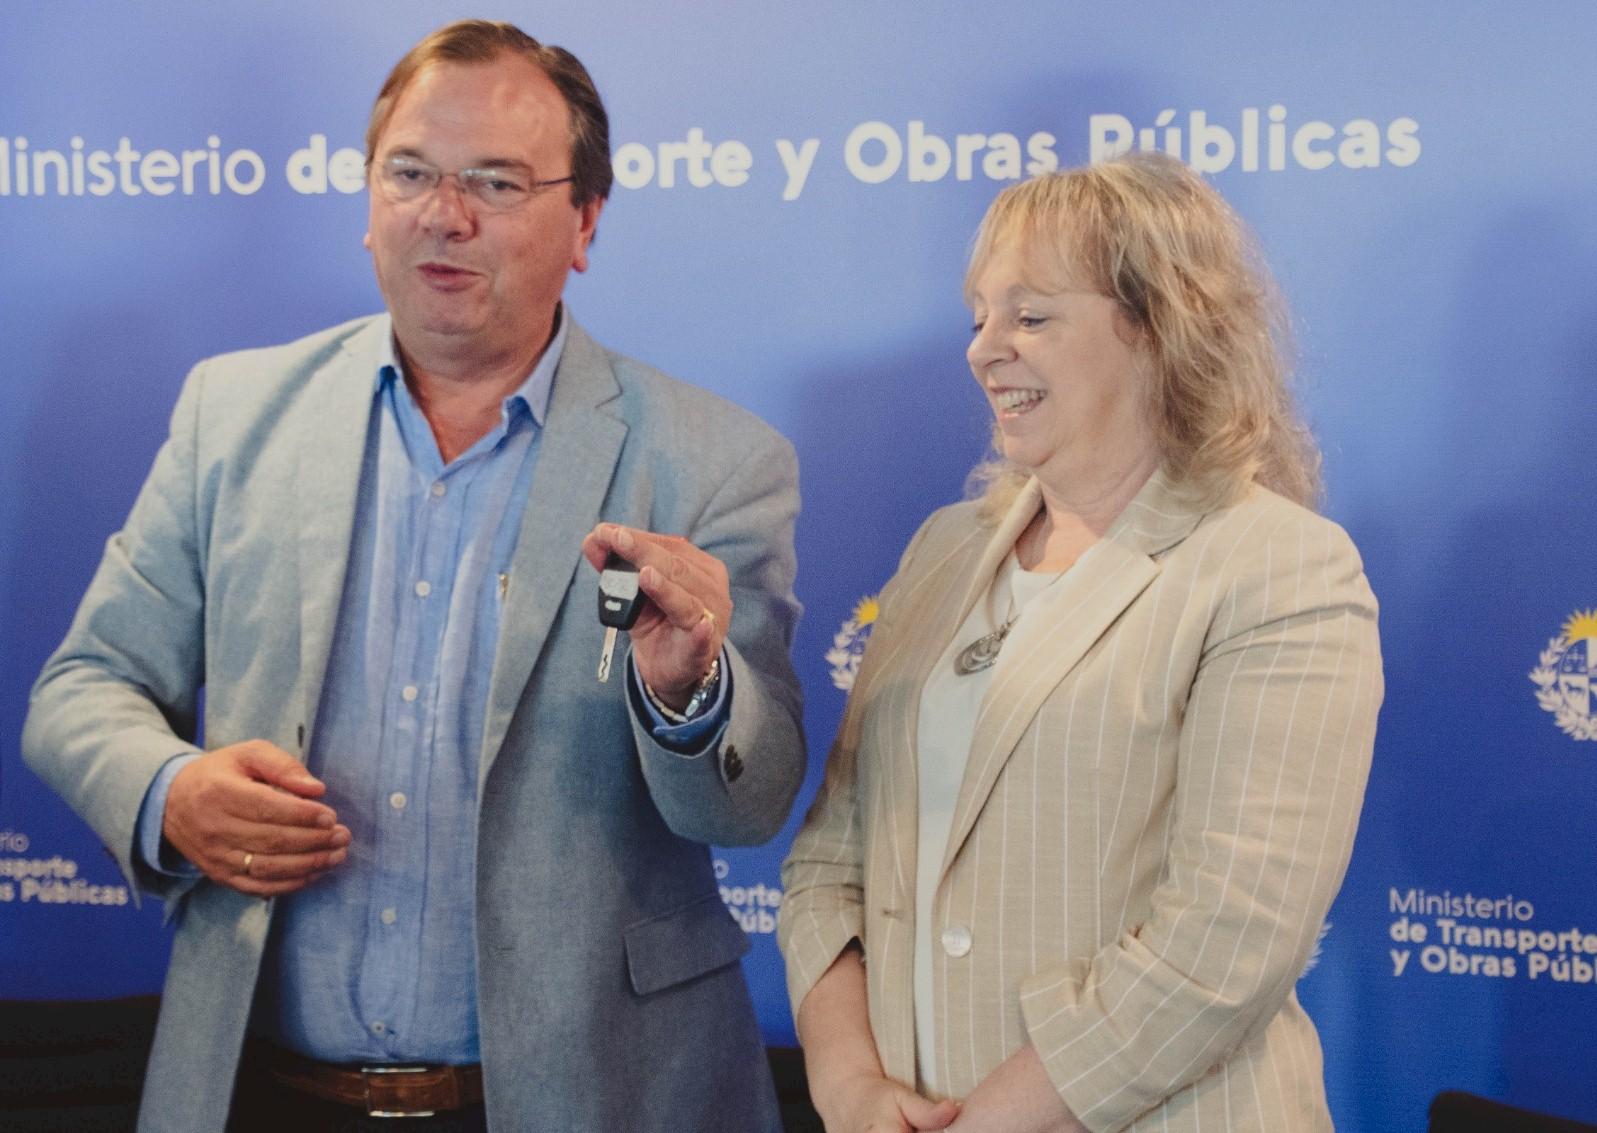 Ministro de Transporte y Obras Públicas José Luis Falero y presidenta de UTE Silvia Emaldi